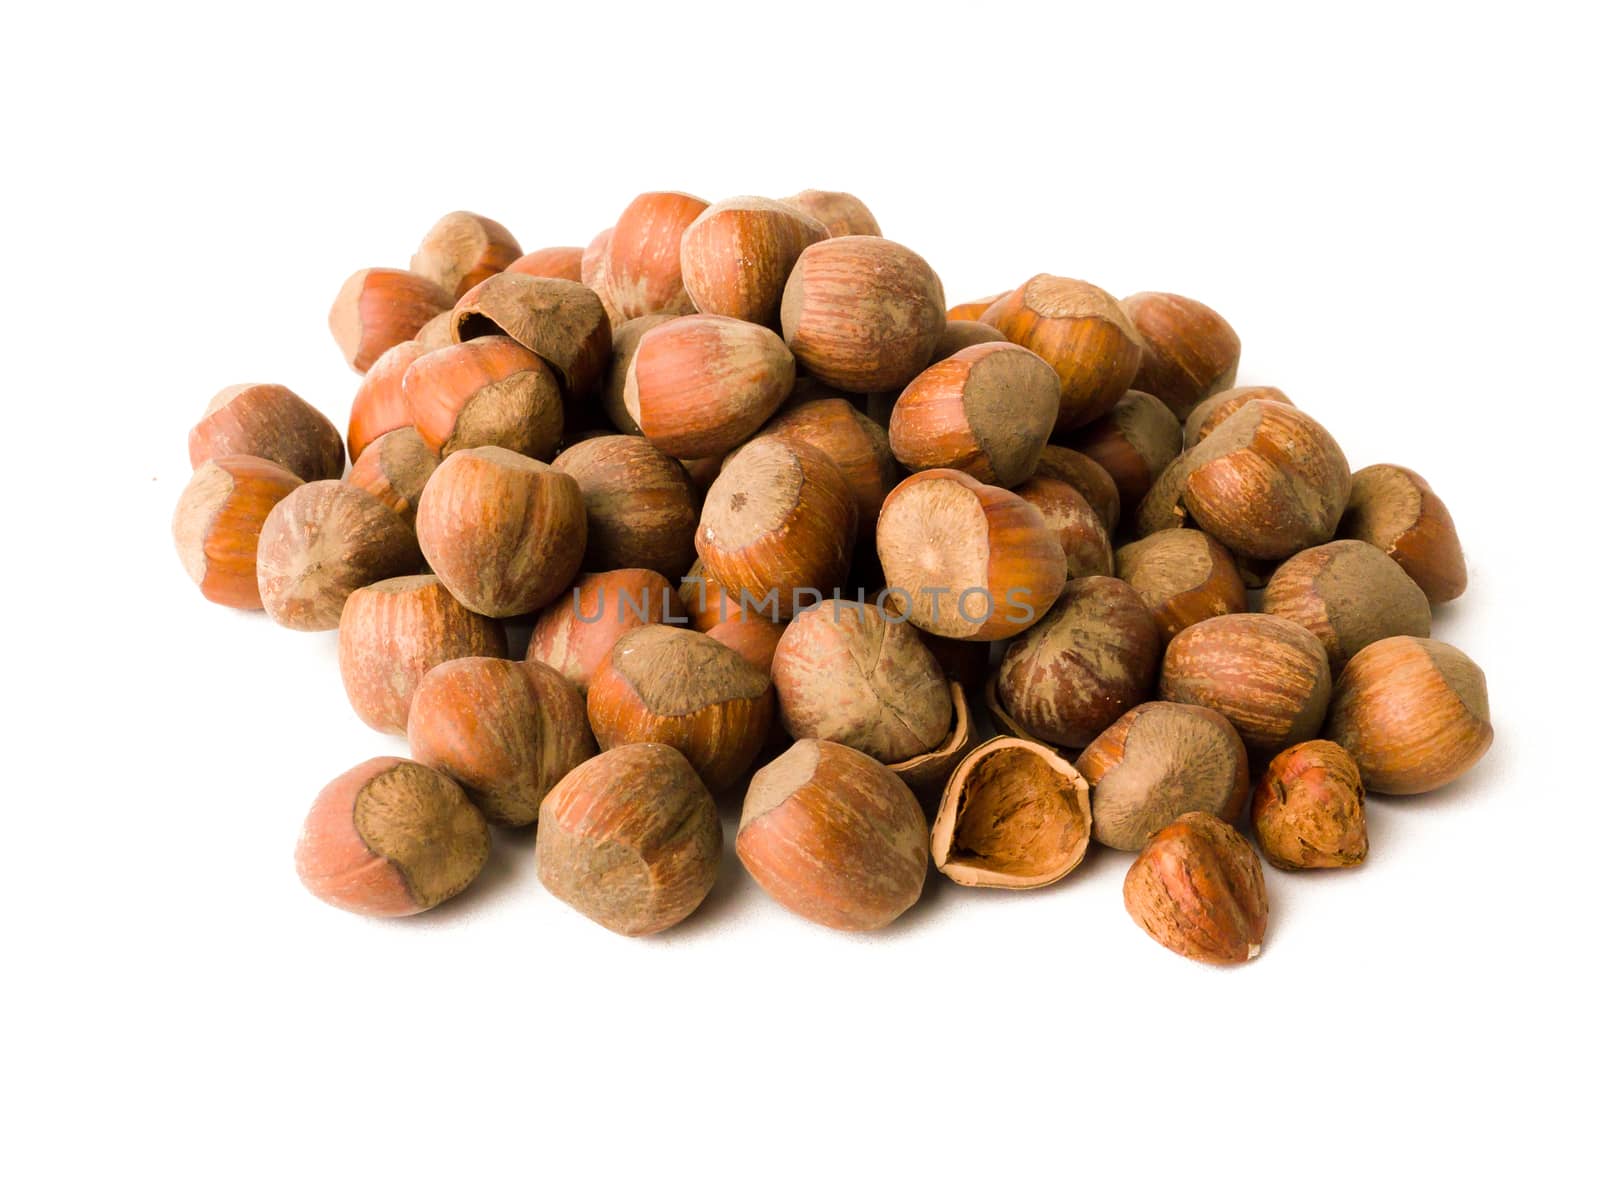 Pile of hazelnuts isolated on white.